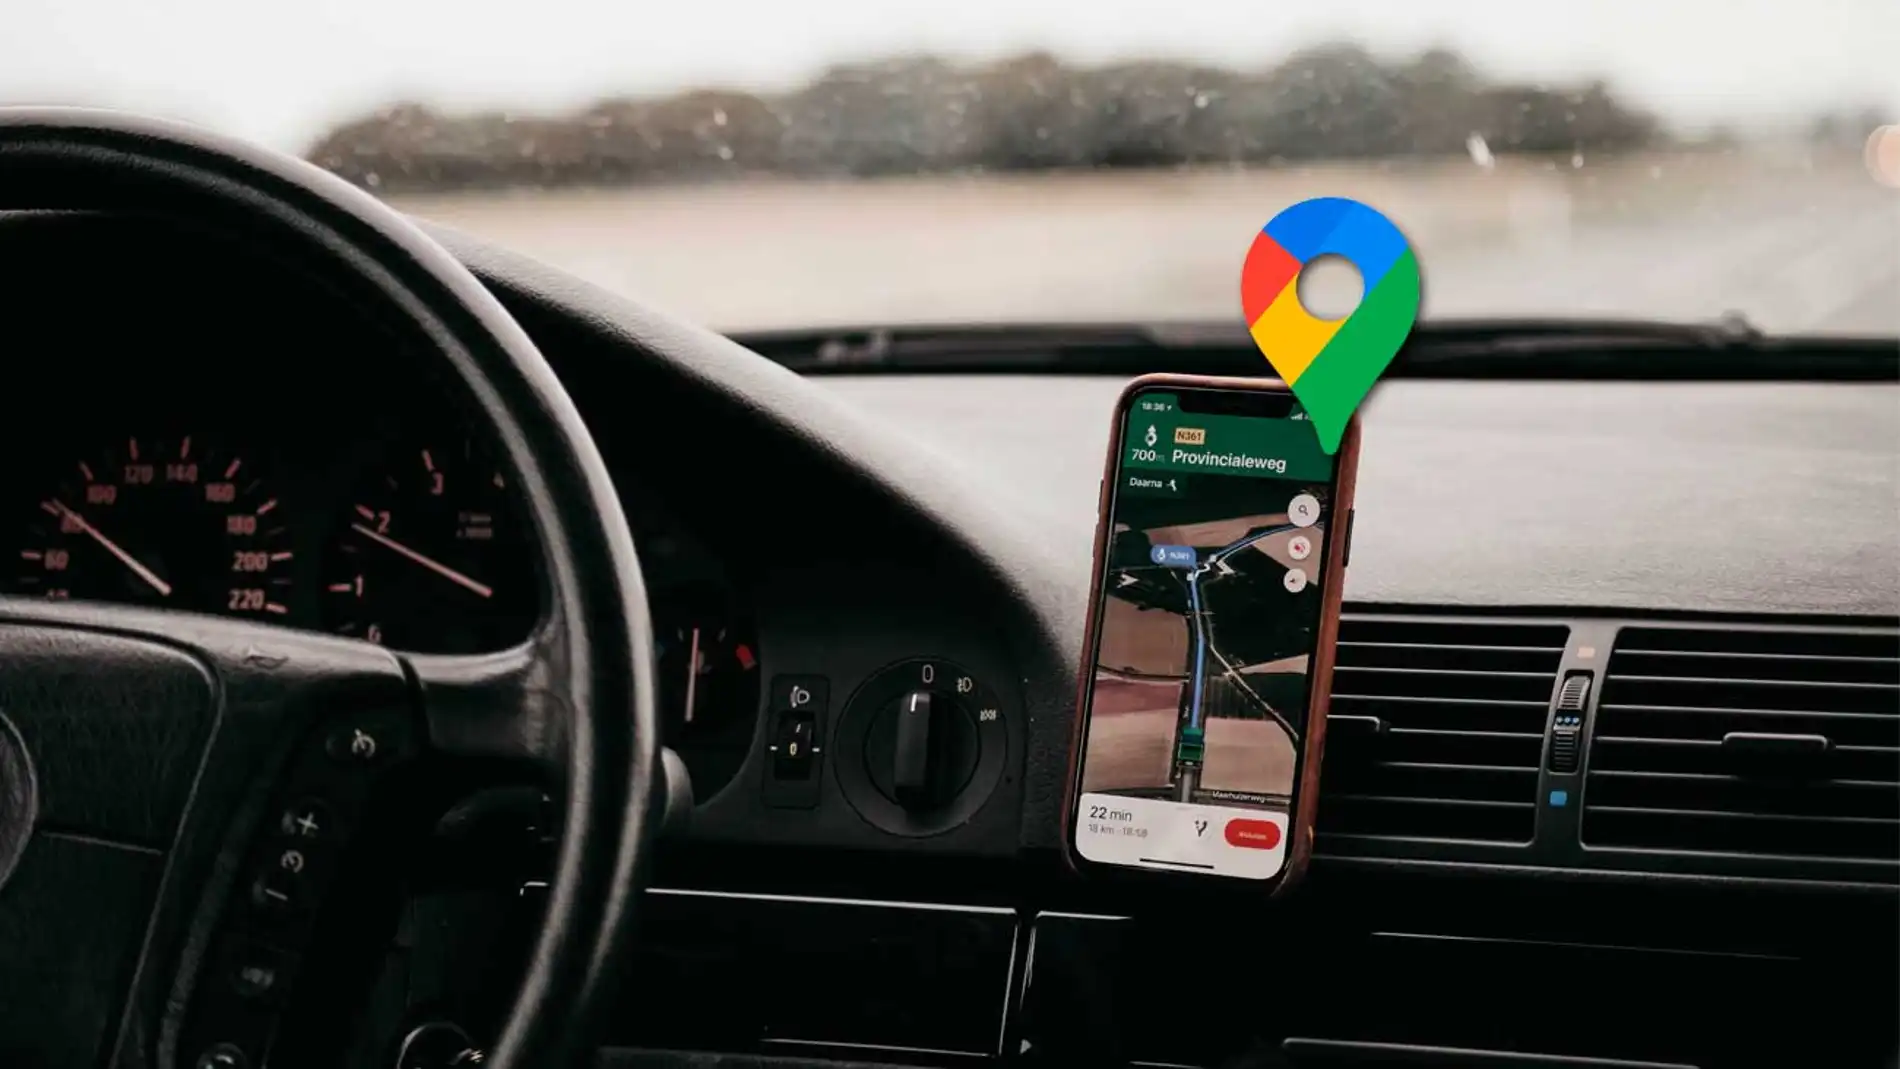 Optimiza tus viajes con una pantalla GPS para coche 